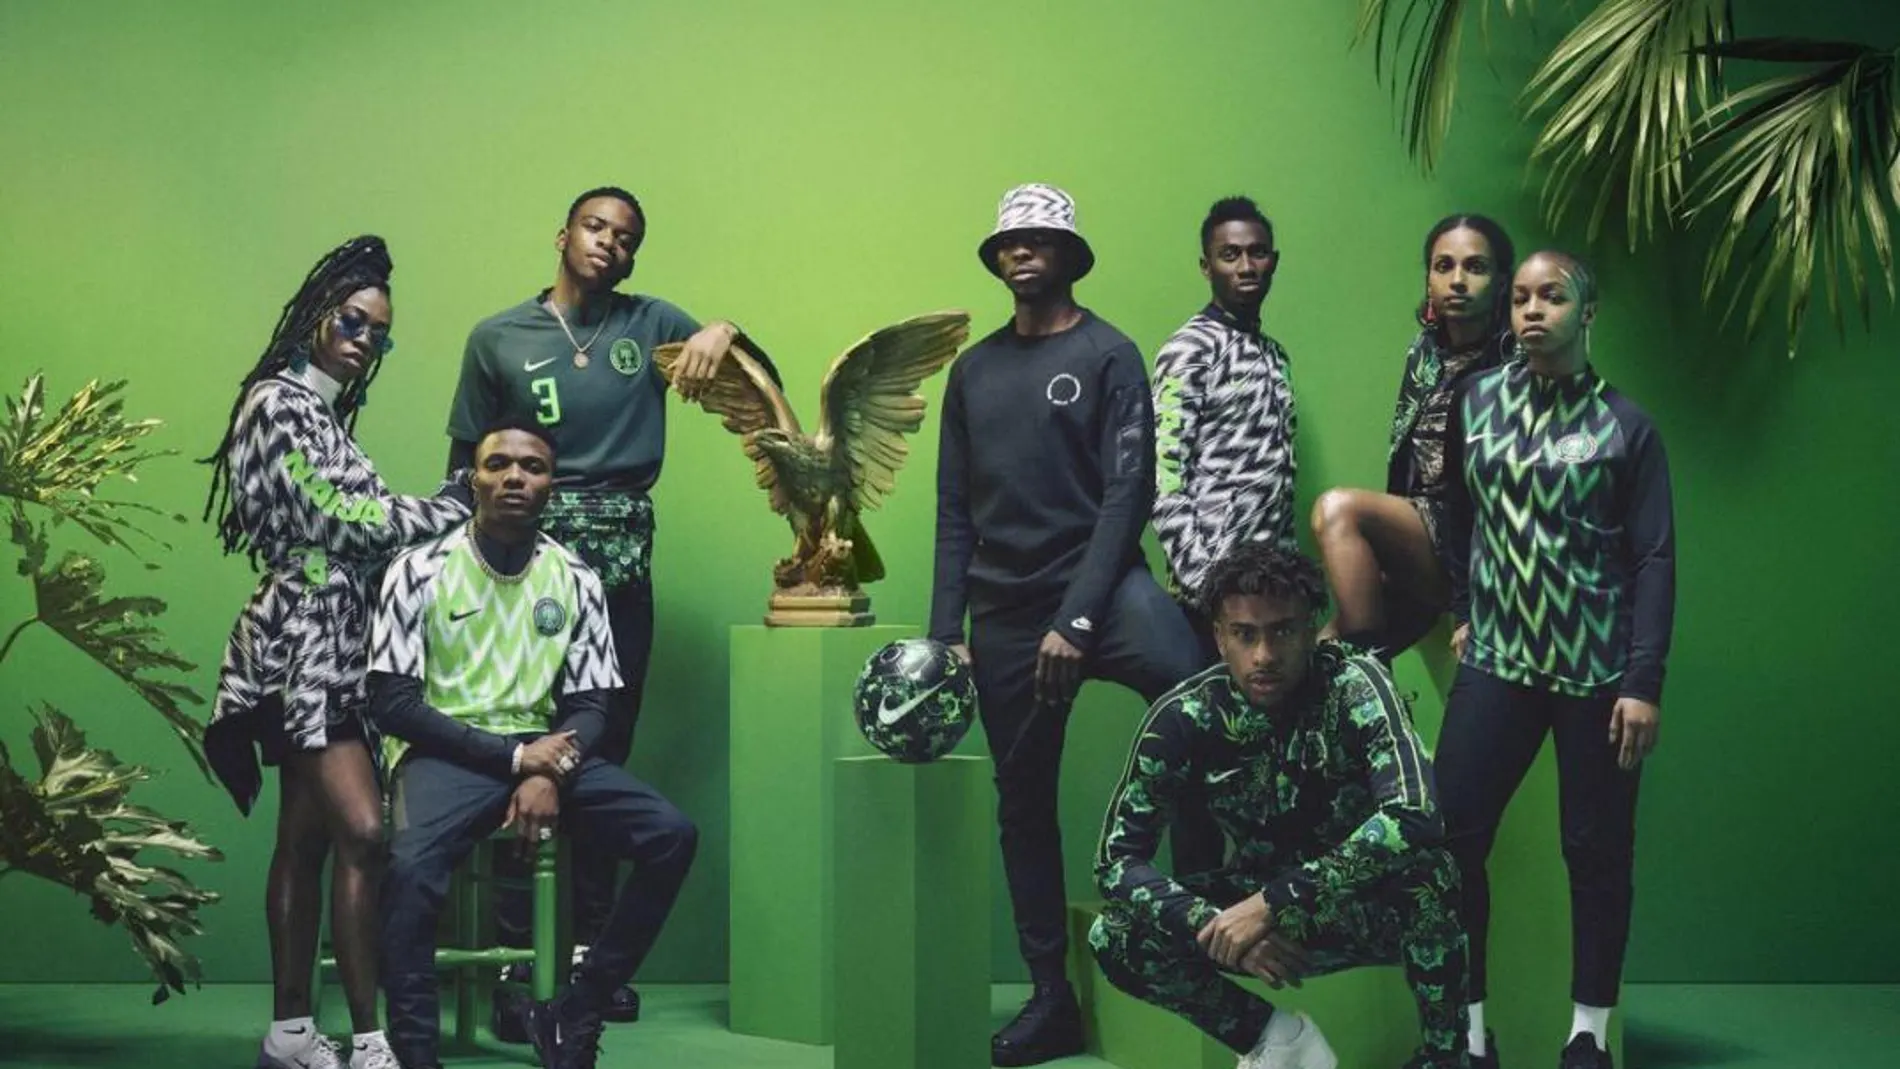 El diseño de la selección africana ha causado furor entre los aficionados agotando existencias. Foto: Nike